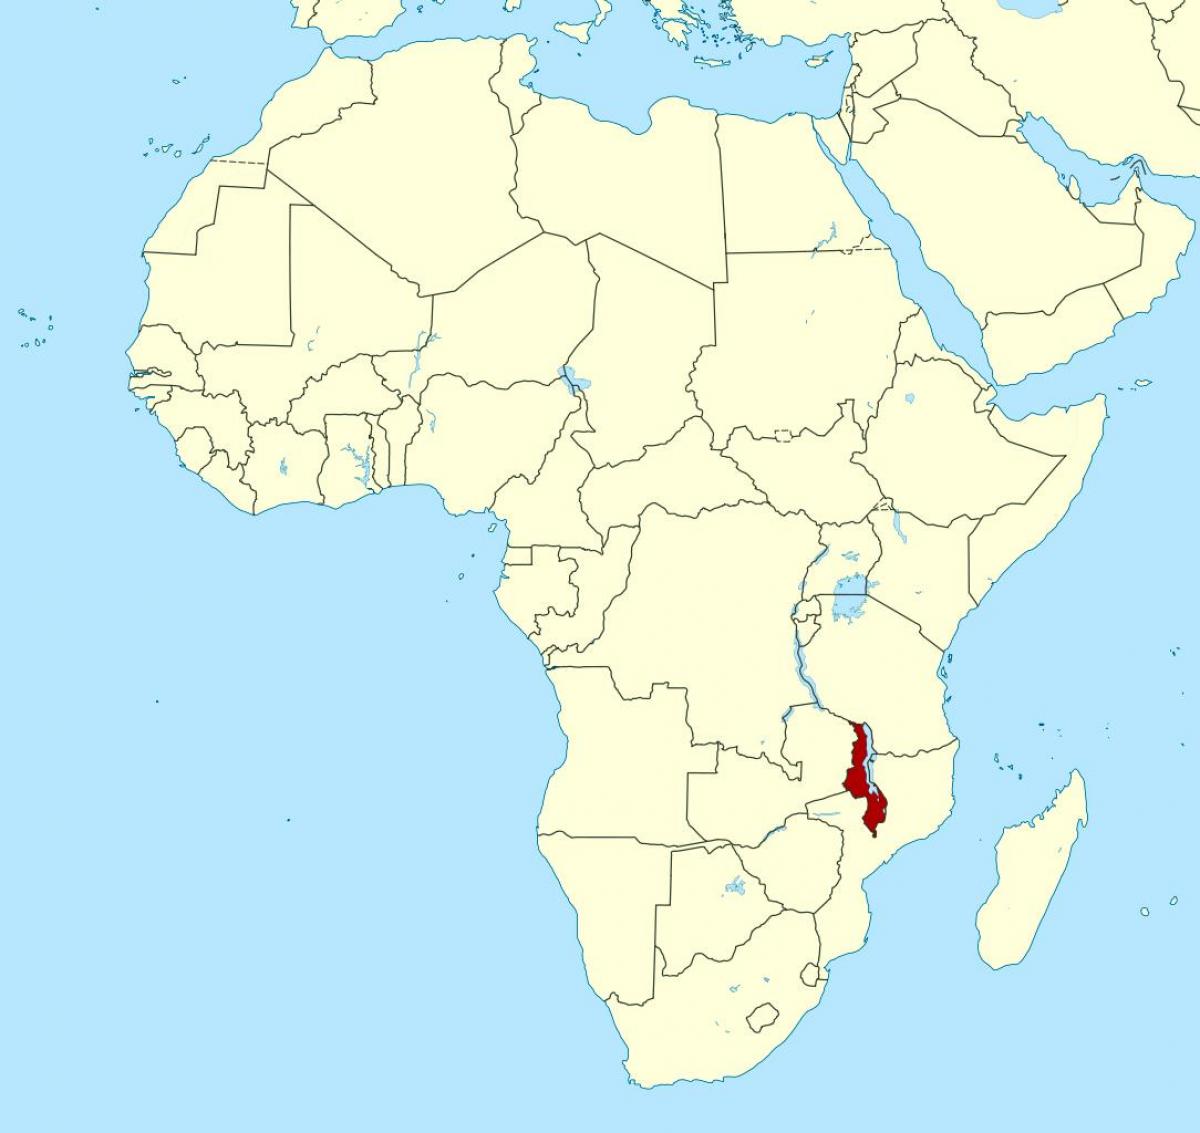 แผนที่ของมาลาวีตำแหน่งแผนที่แอฟริกา